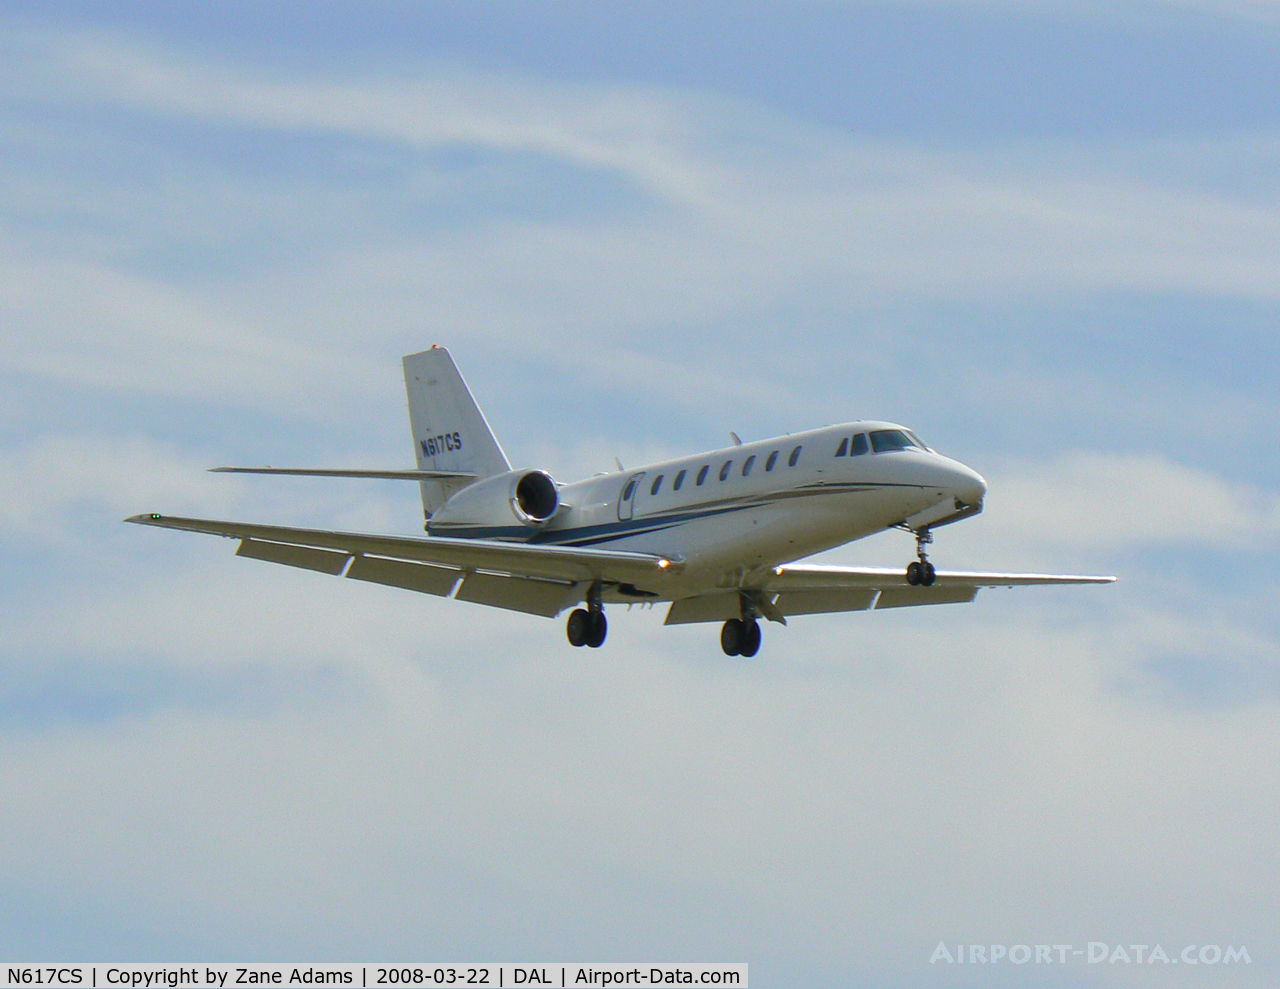 N617CS, 2006 Cessna 680 Citation Sovereign C/N 680-0102, Landing - Love Field - Dallas